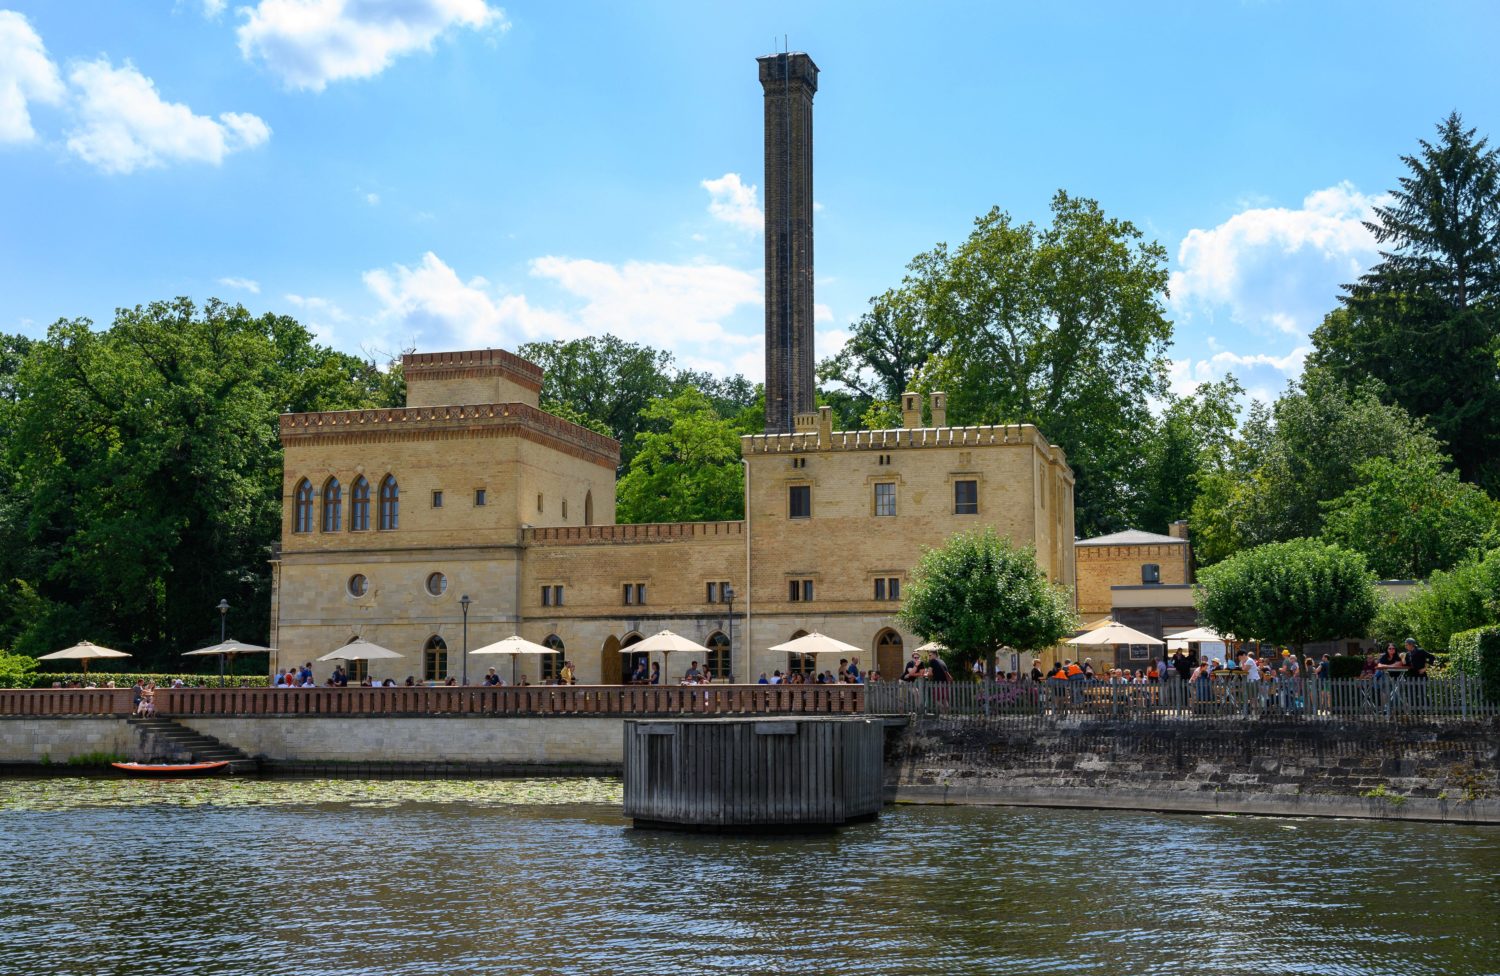 besondere Orte in Potsdam: Wunderschöner Biergarten am See: Ein Besuch der Meierei in Potsdam ist im Sommer eine echte Empfehlung. 